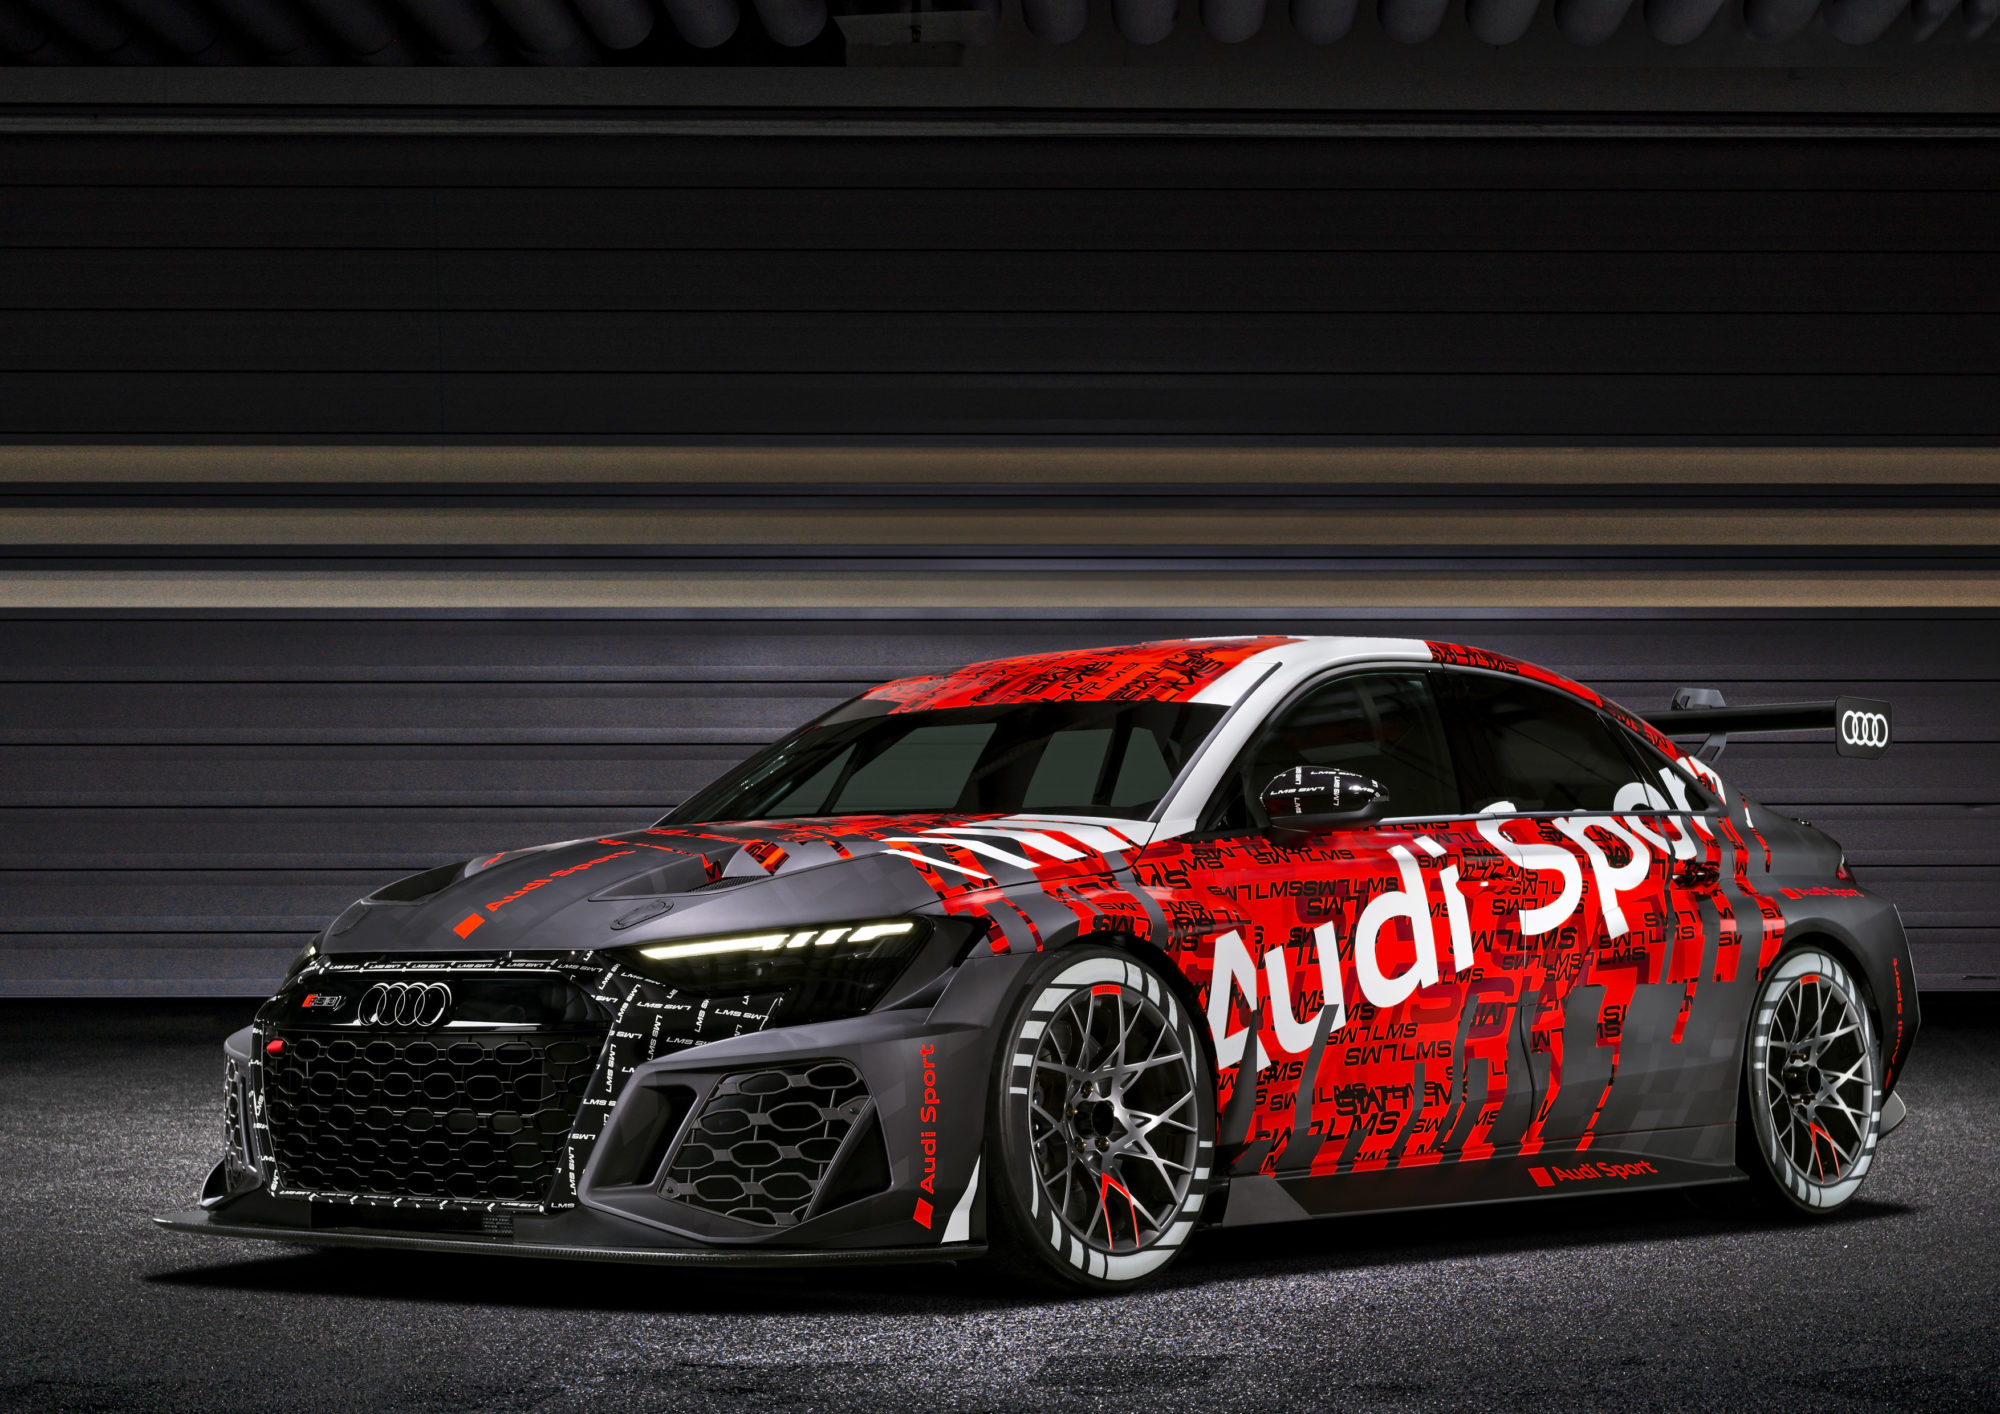 Première mondiale de la nouvelle Audi RS 3 LMS - Audi France Media